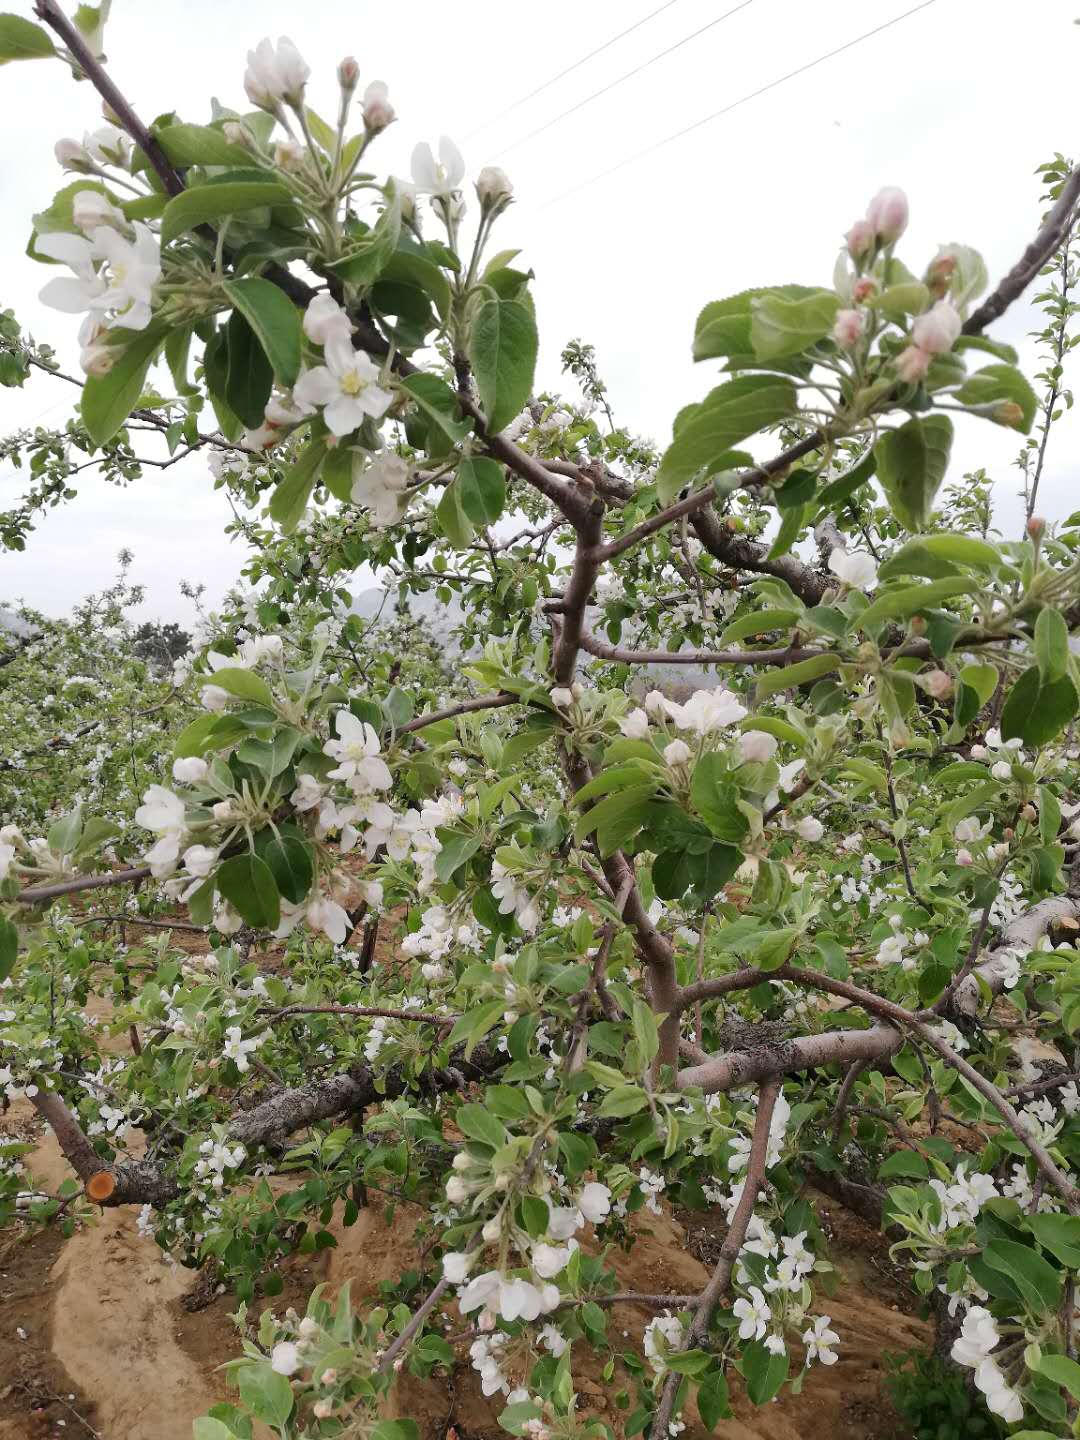 苹果开花时农民会在果树下盖个小房子,城里人知道是做什么的吗?